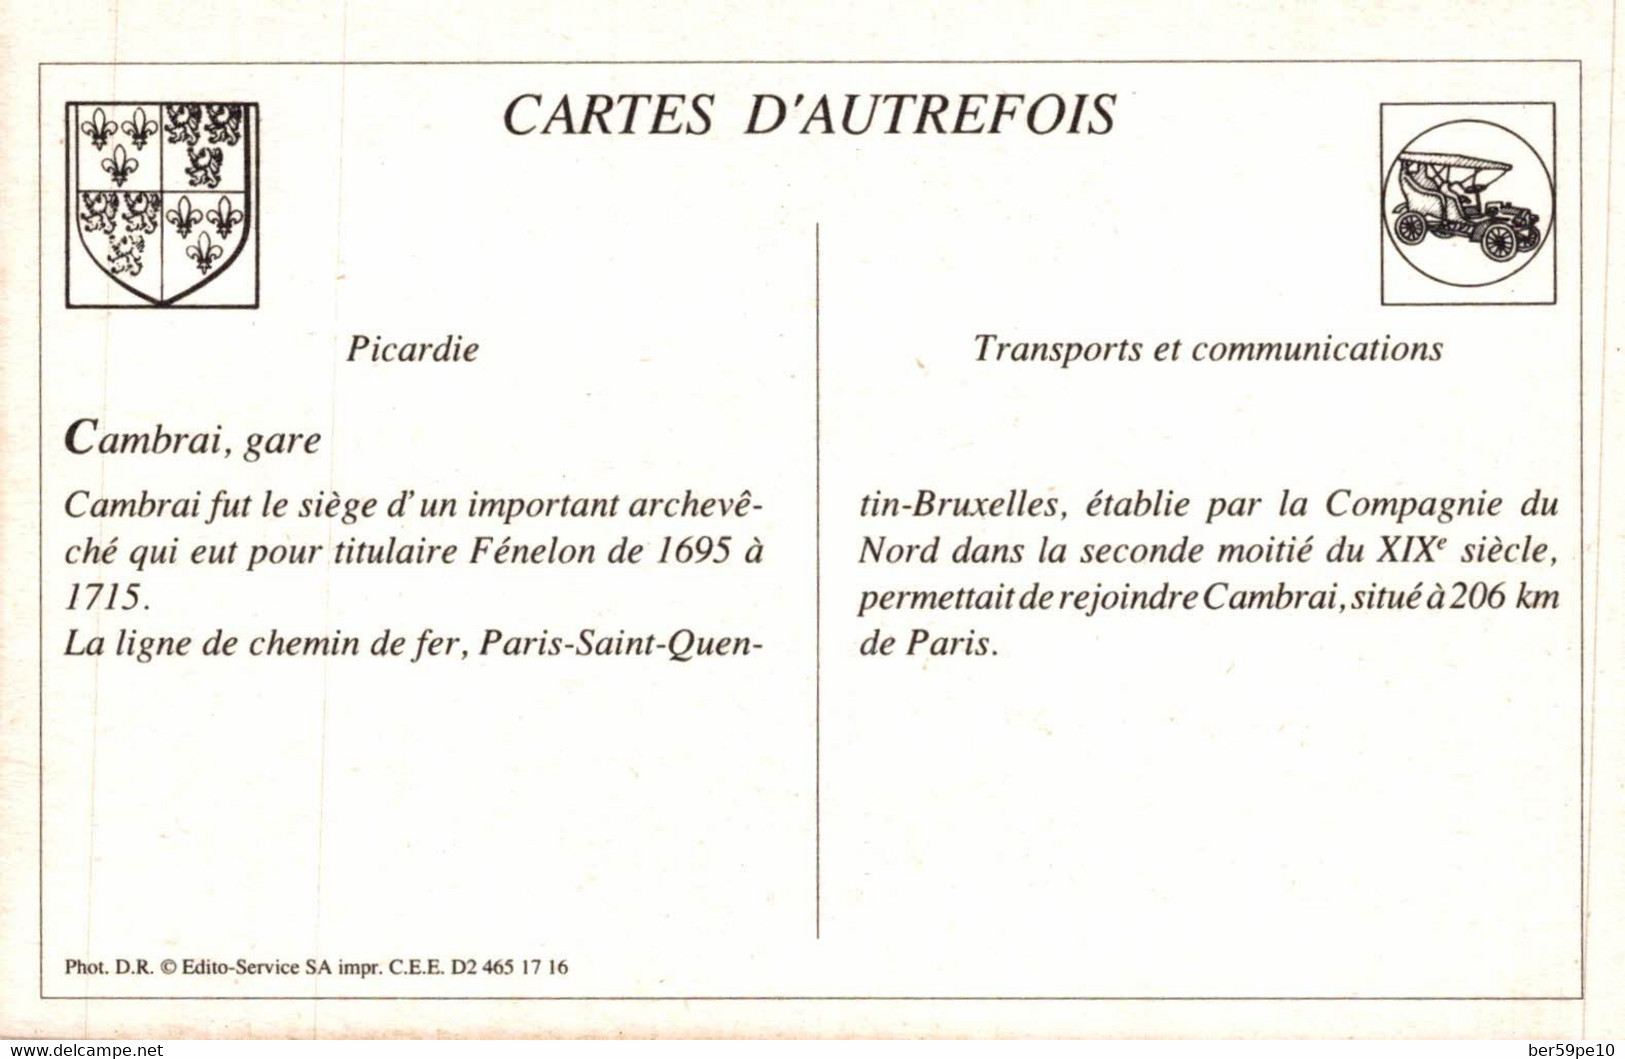 CARTE D'AUTREFOIS  TRANSPORTS ET COMMUNICATIONS  - PICARDIE  CAMBRAI GARE - Picardie